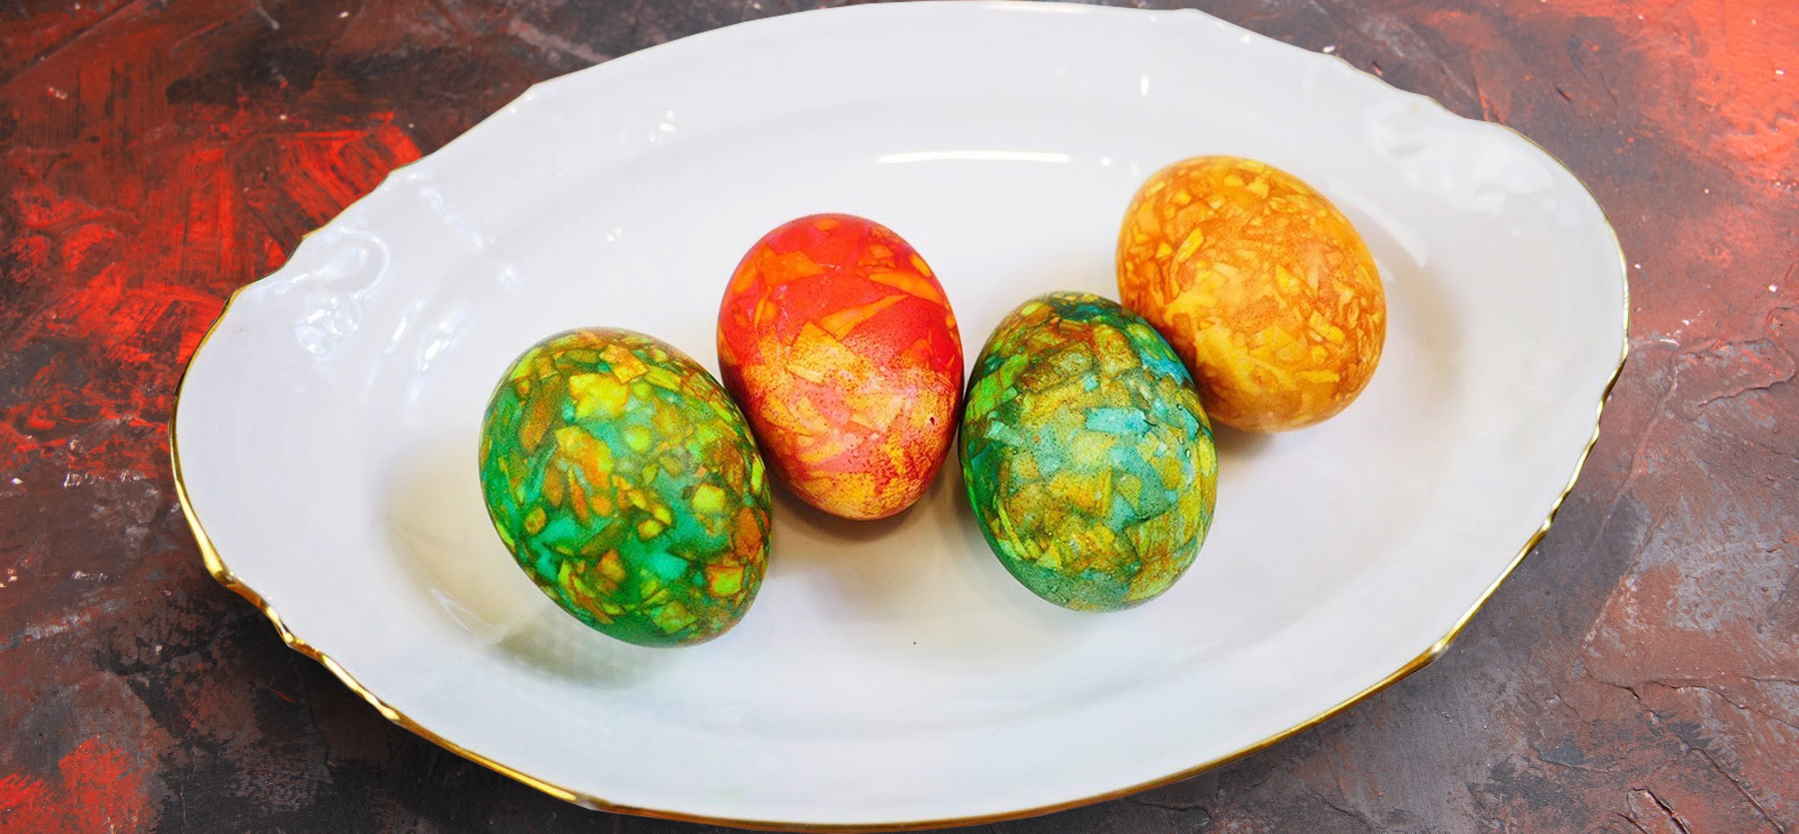 мармурові яйця із цибулинням і зеленкою